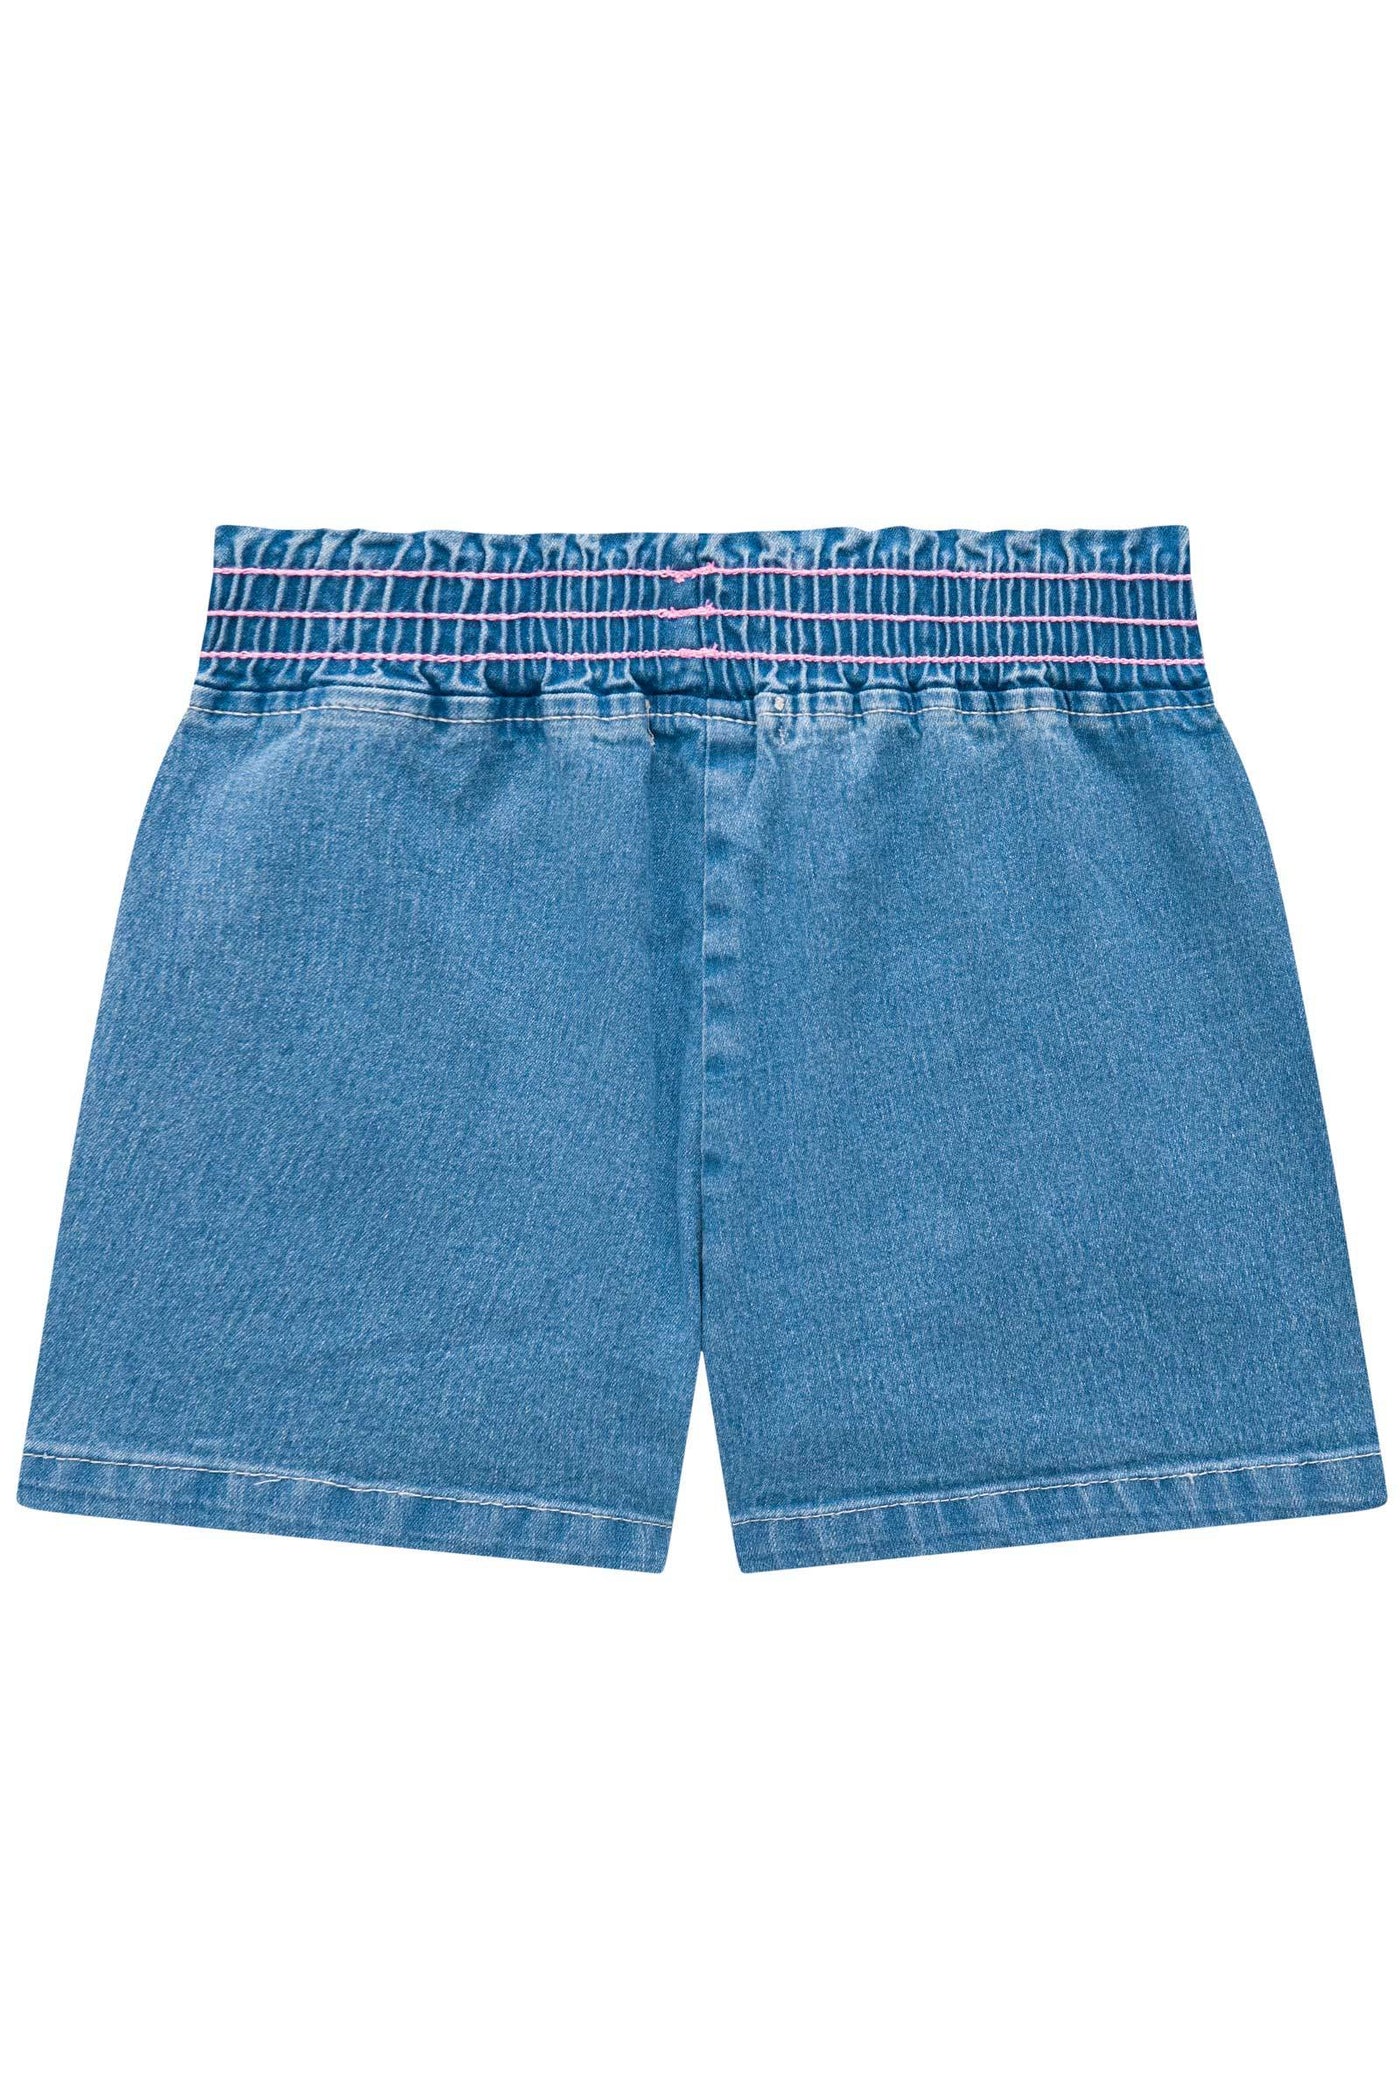 Shorts em Jeans Belini 73903 Kukiê